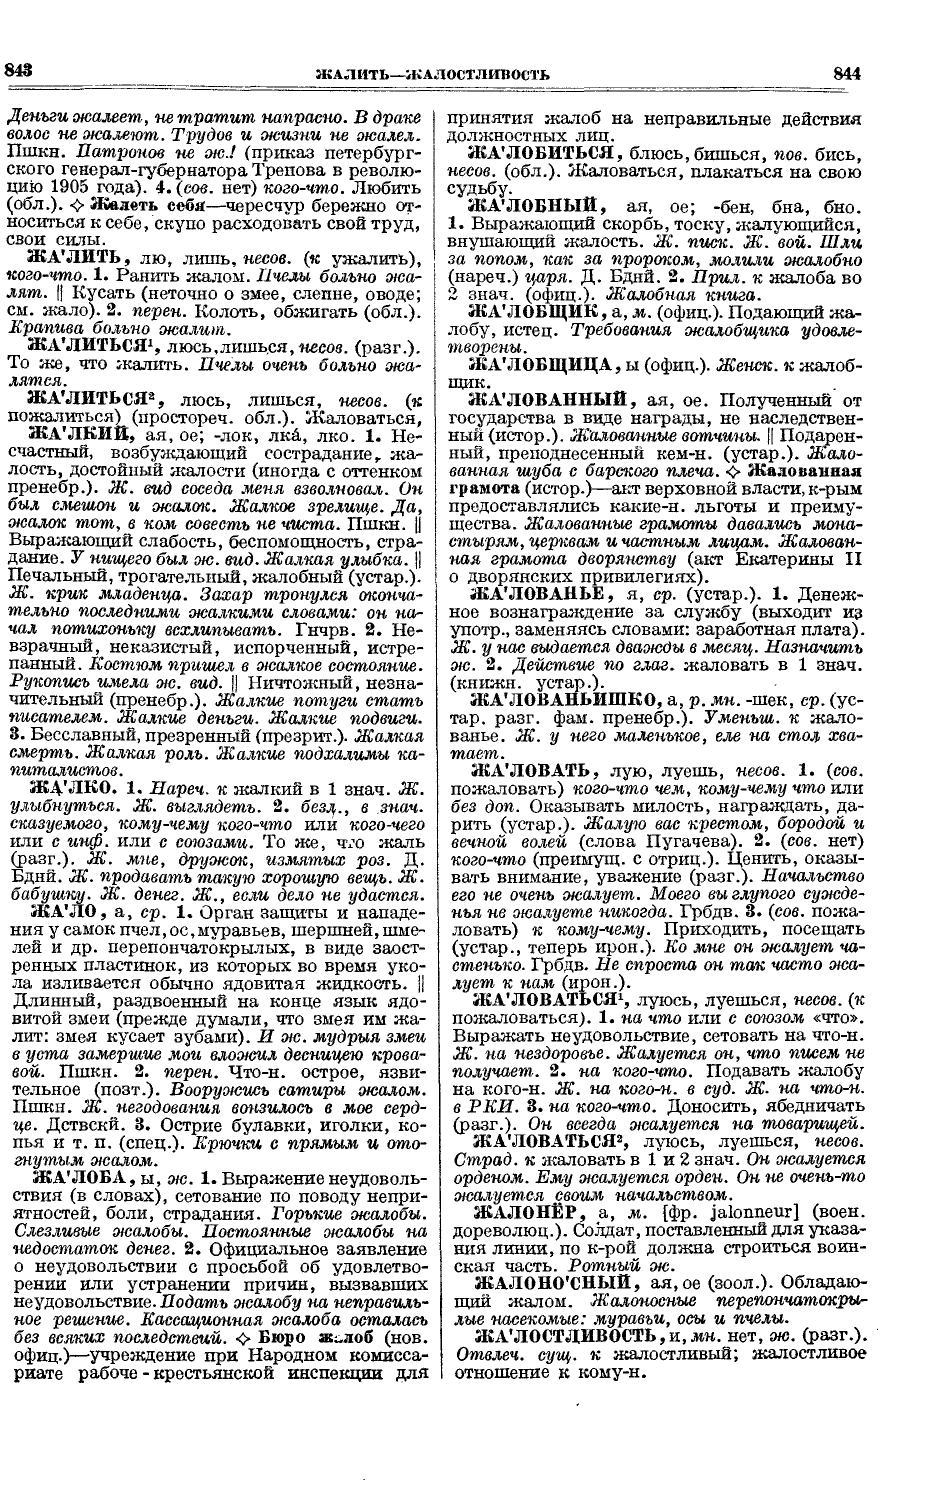 Фотокопия pdf / скан страницы 460 толкового словаря Ушакова (том 1)